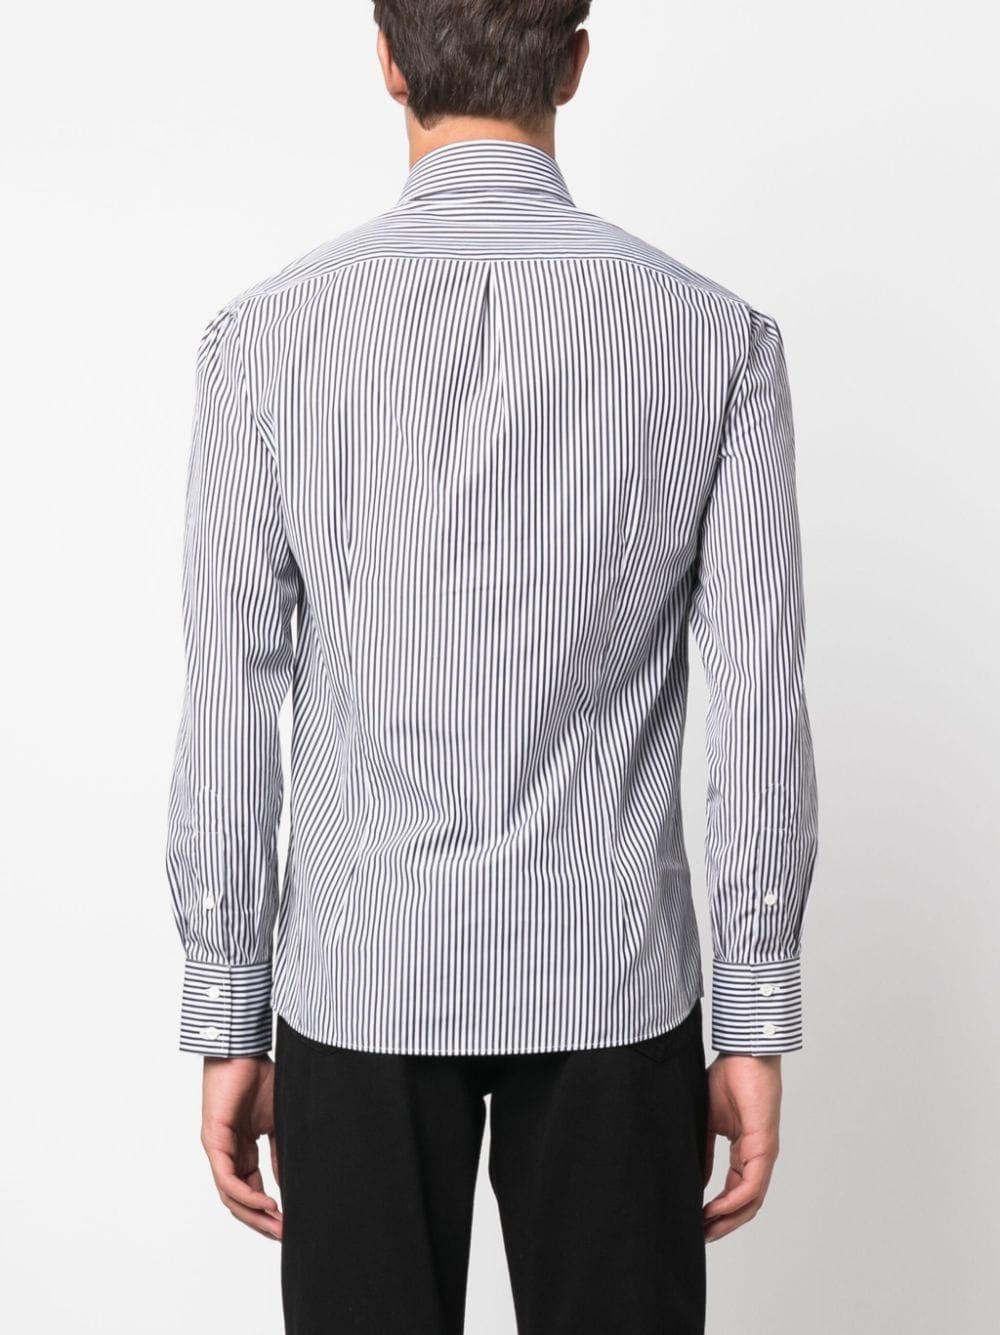 Brunello Cucinelli Shirts Grey